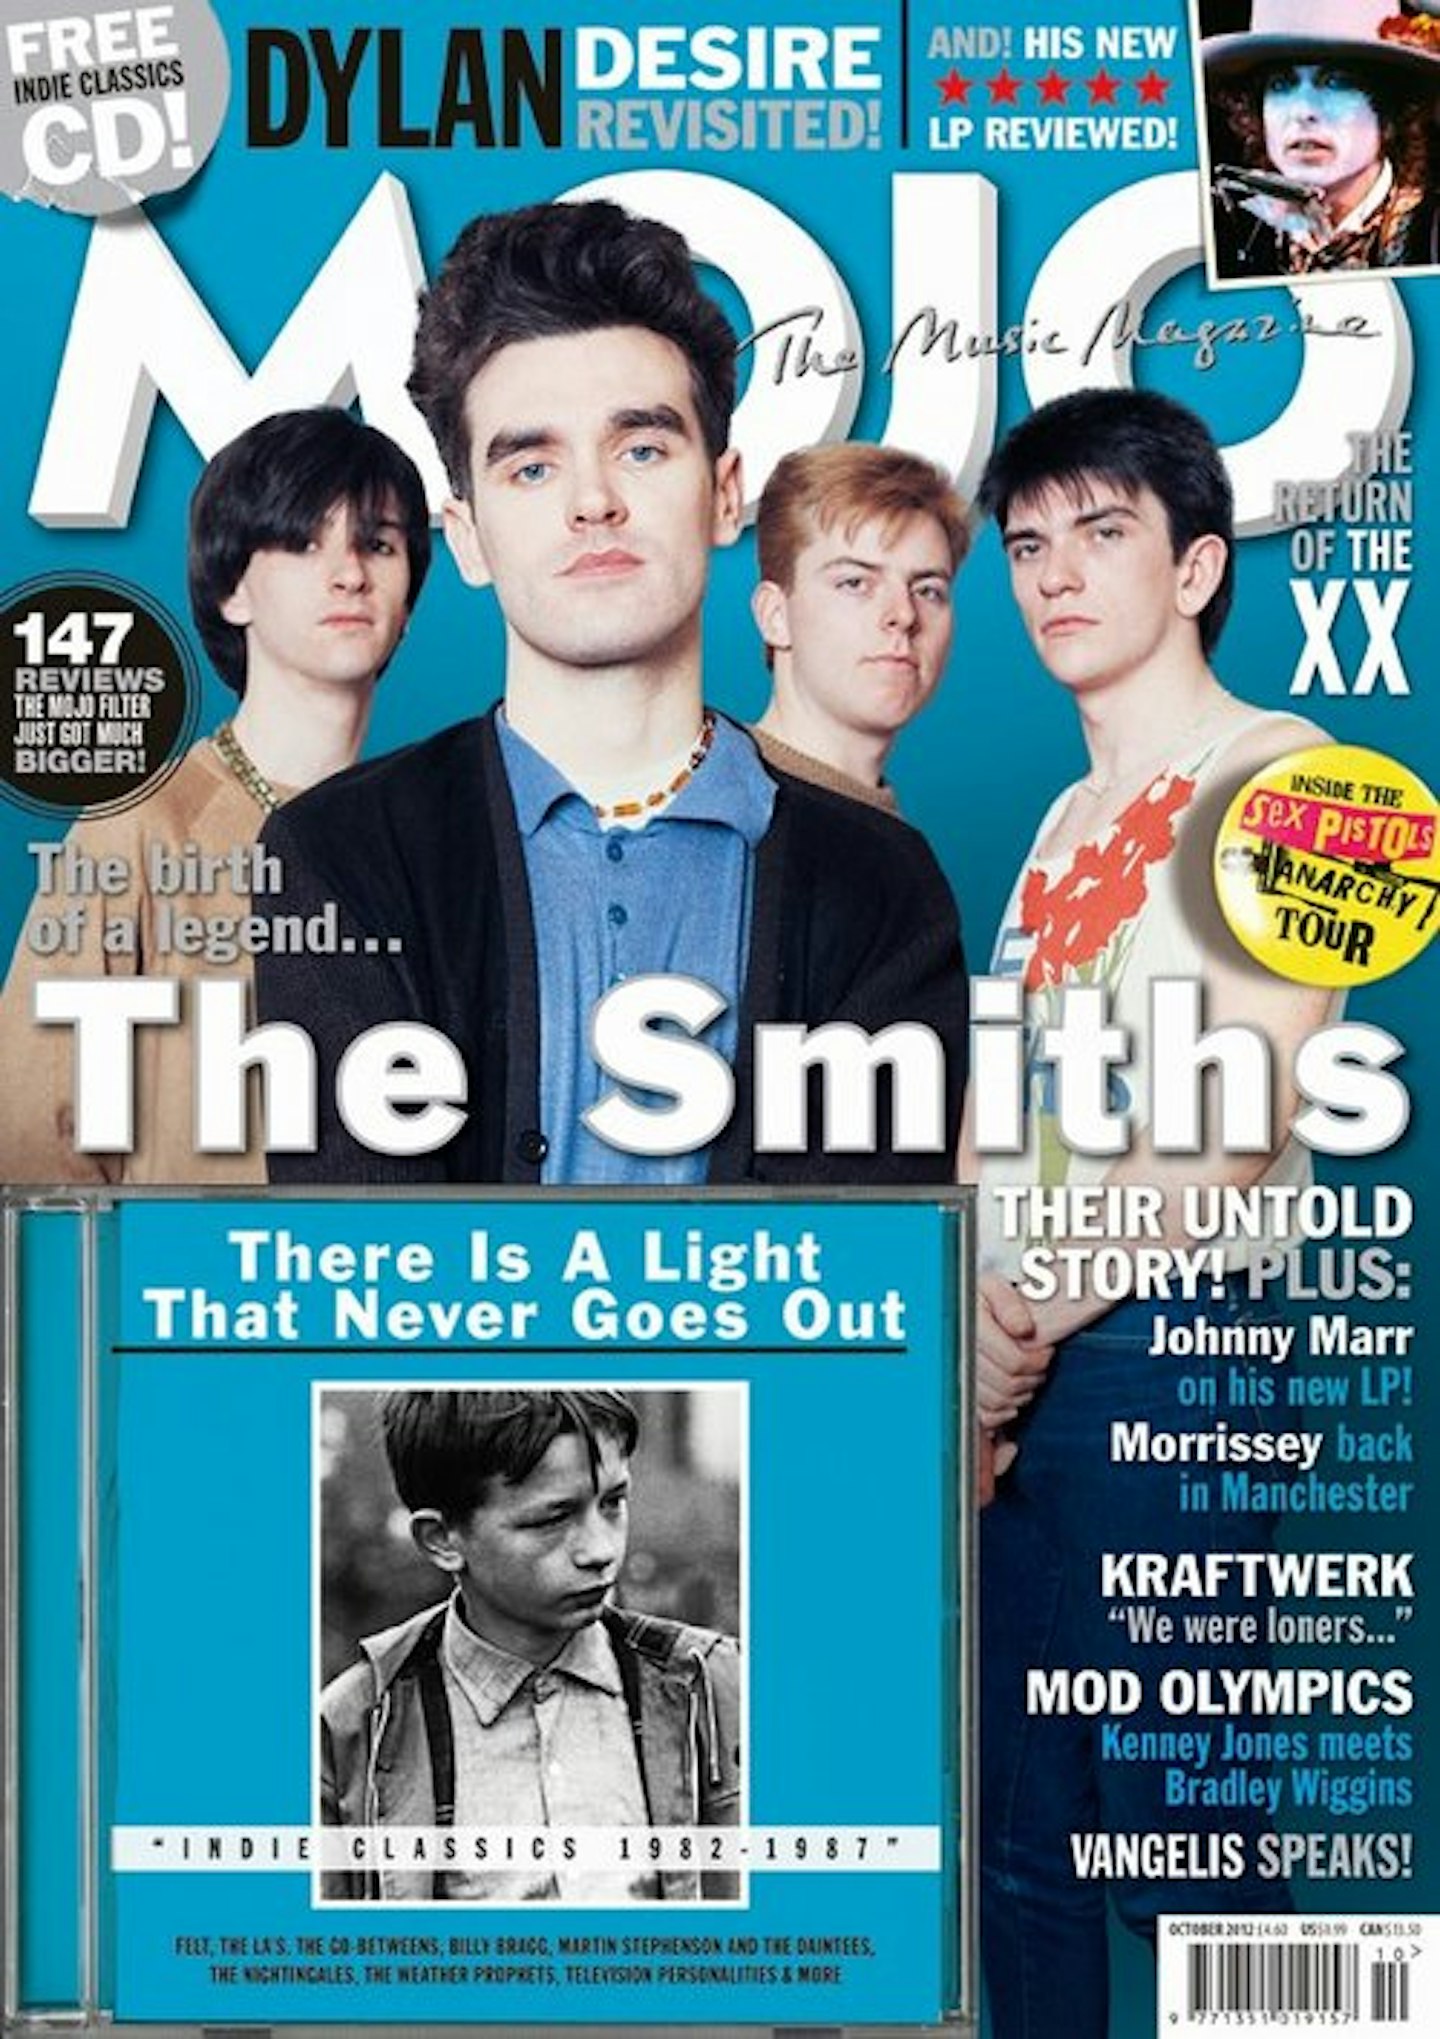 MOJO Issue 227 / October 2012